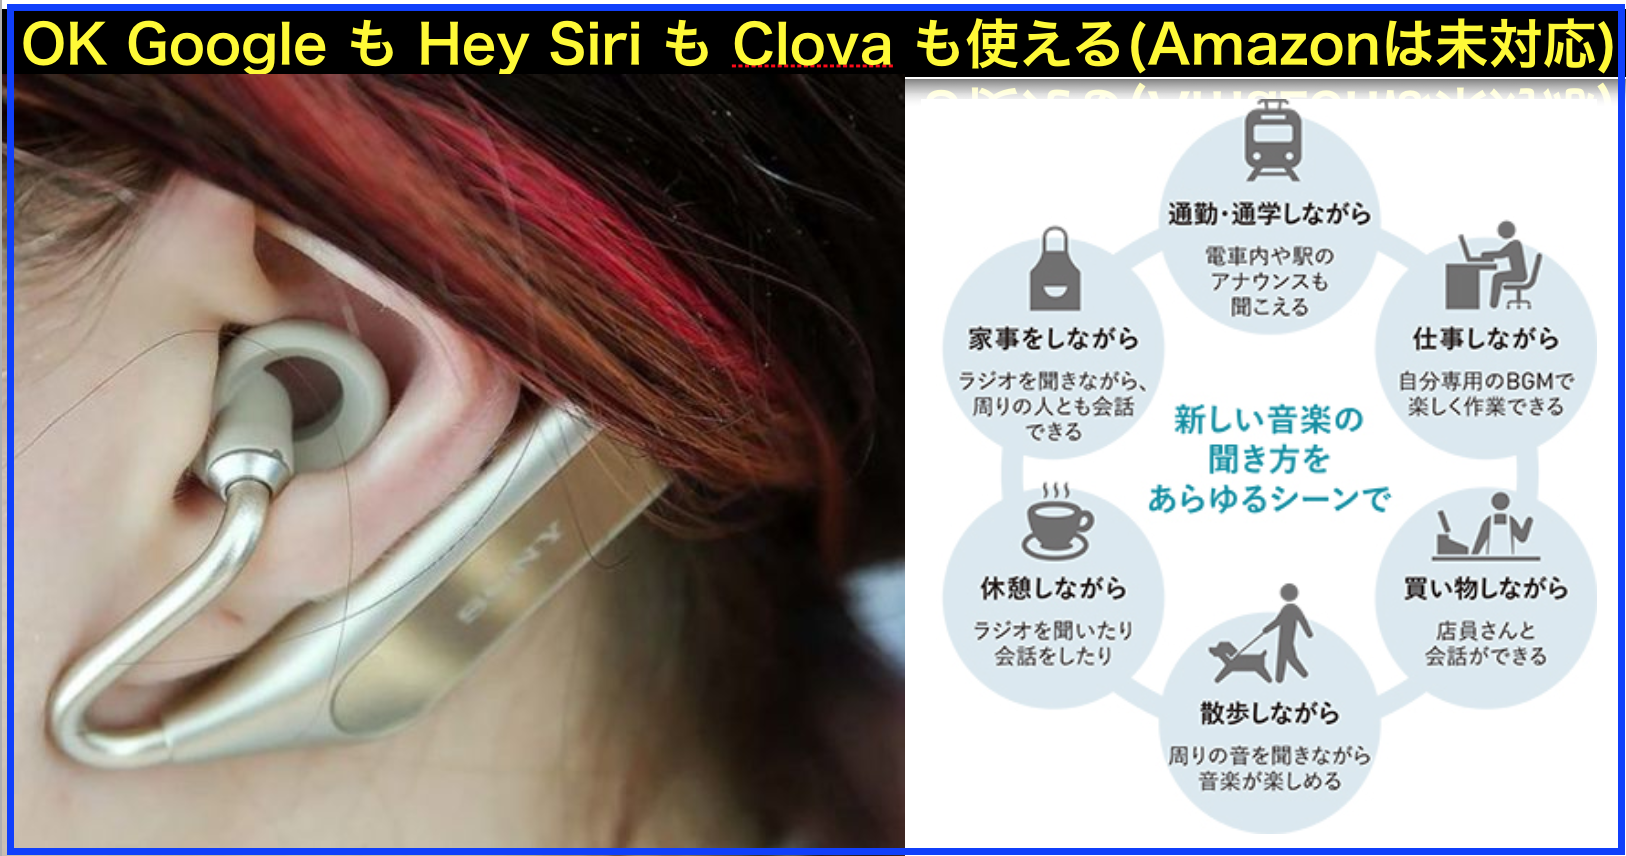 ヒアラブルIoTデバイスのワイヤレスイヤホンXperia Ear Duo｢XEA20｣(SONY)レビュー